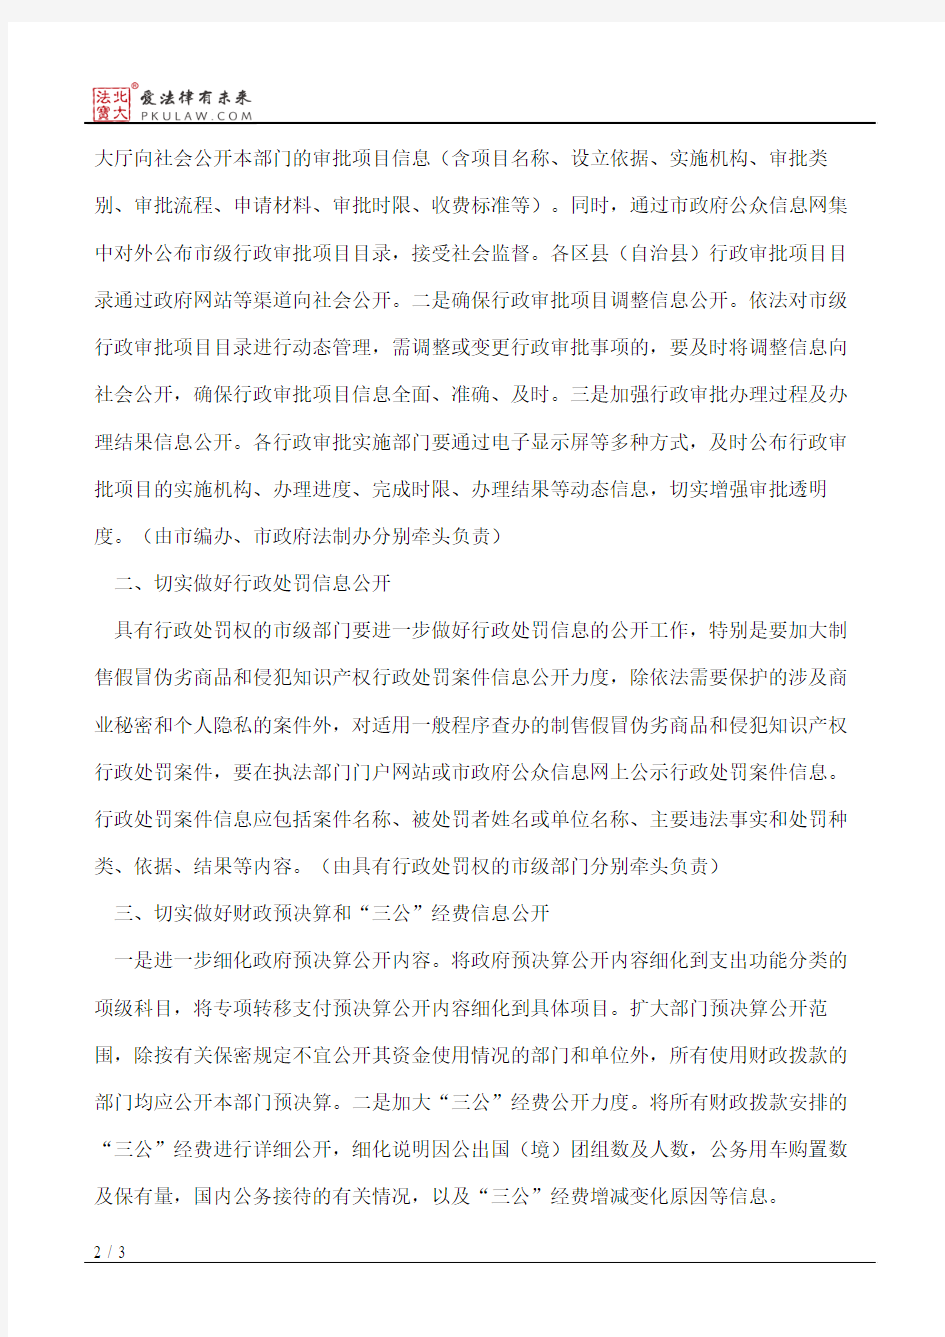 重庆市人民政府办公厅关于做好当前政府信息公开有关工作的通知